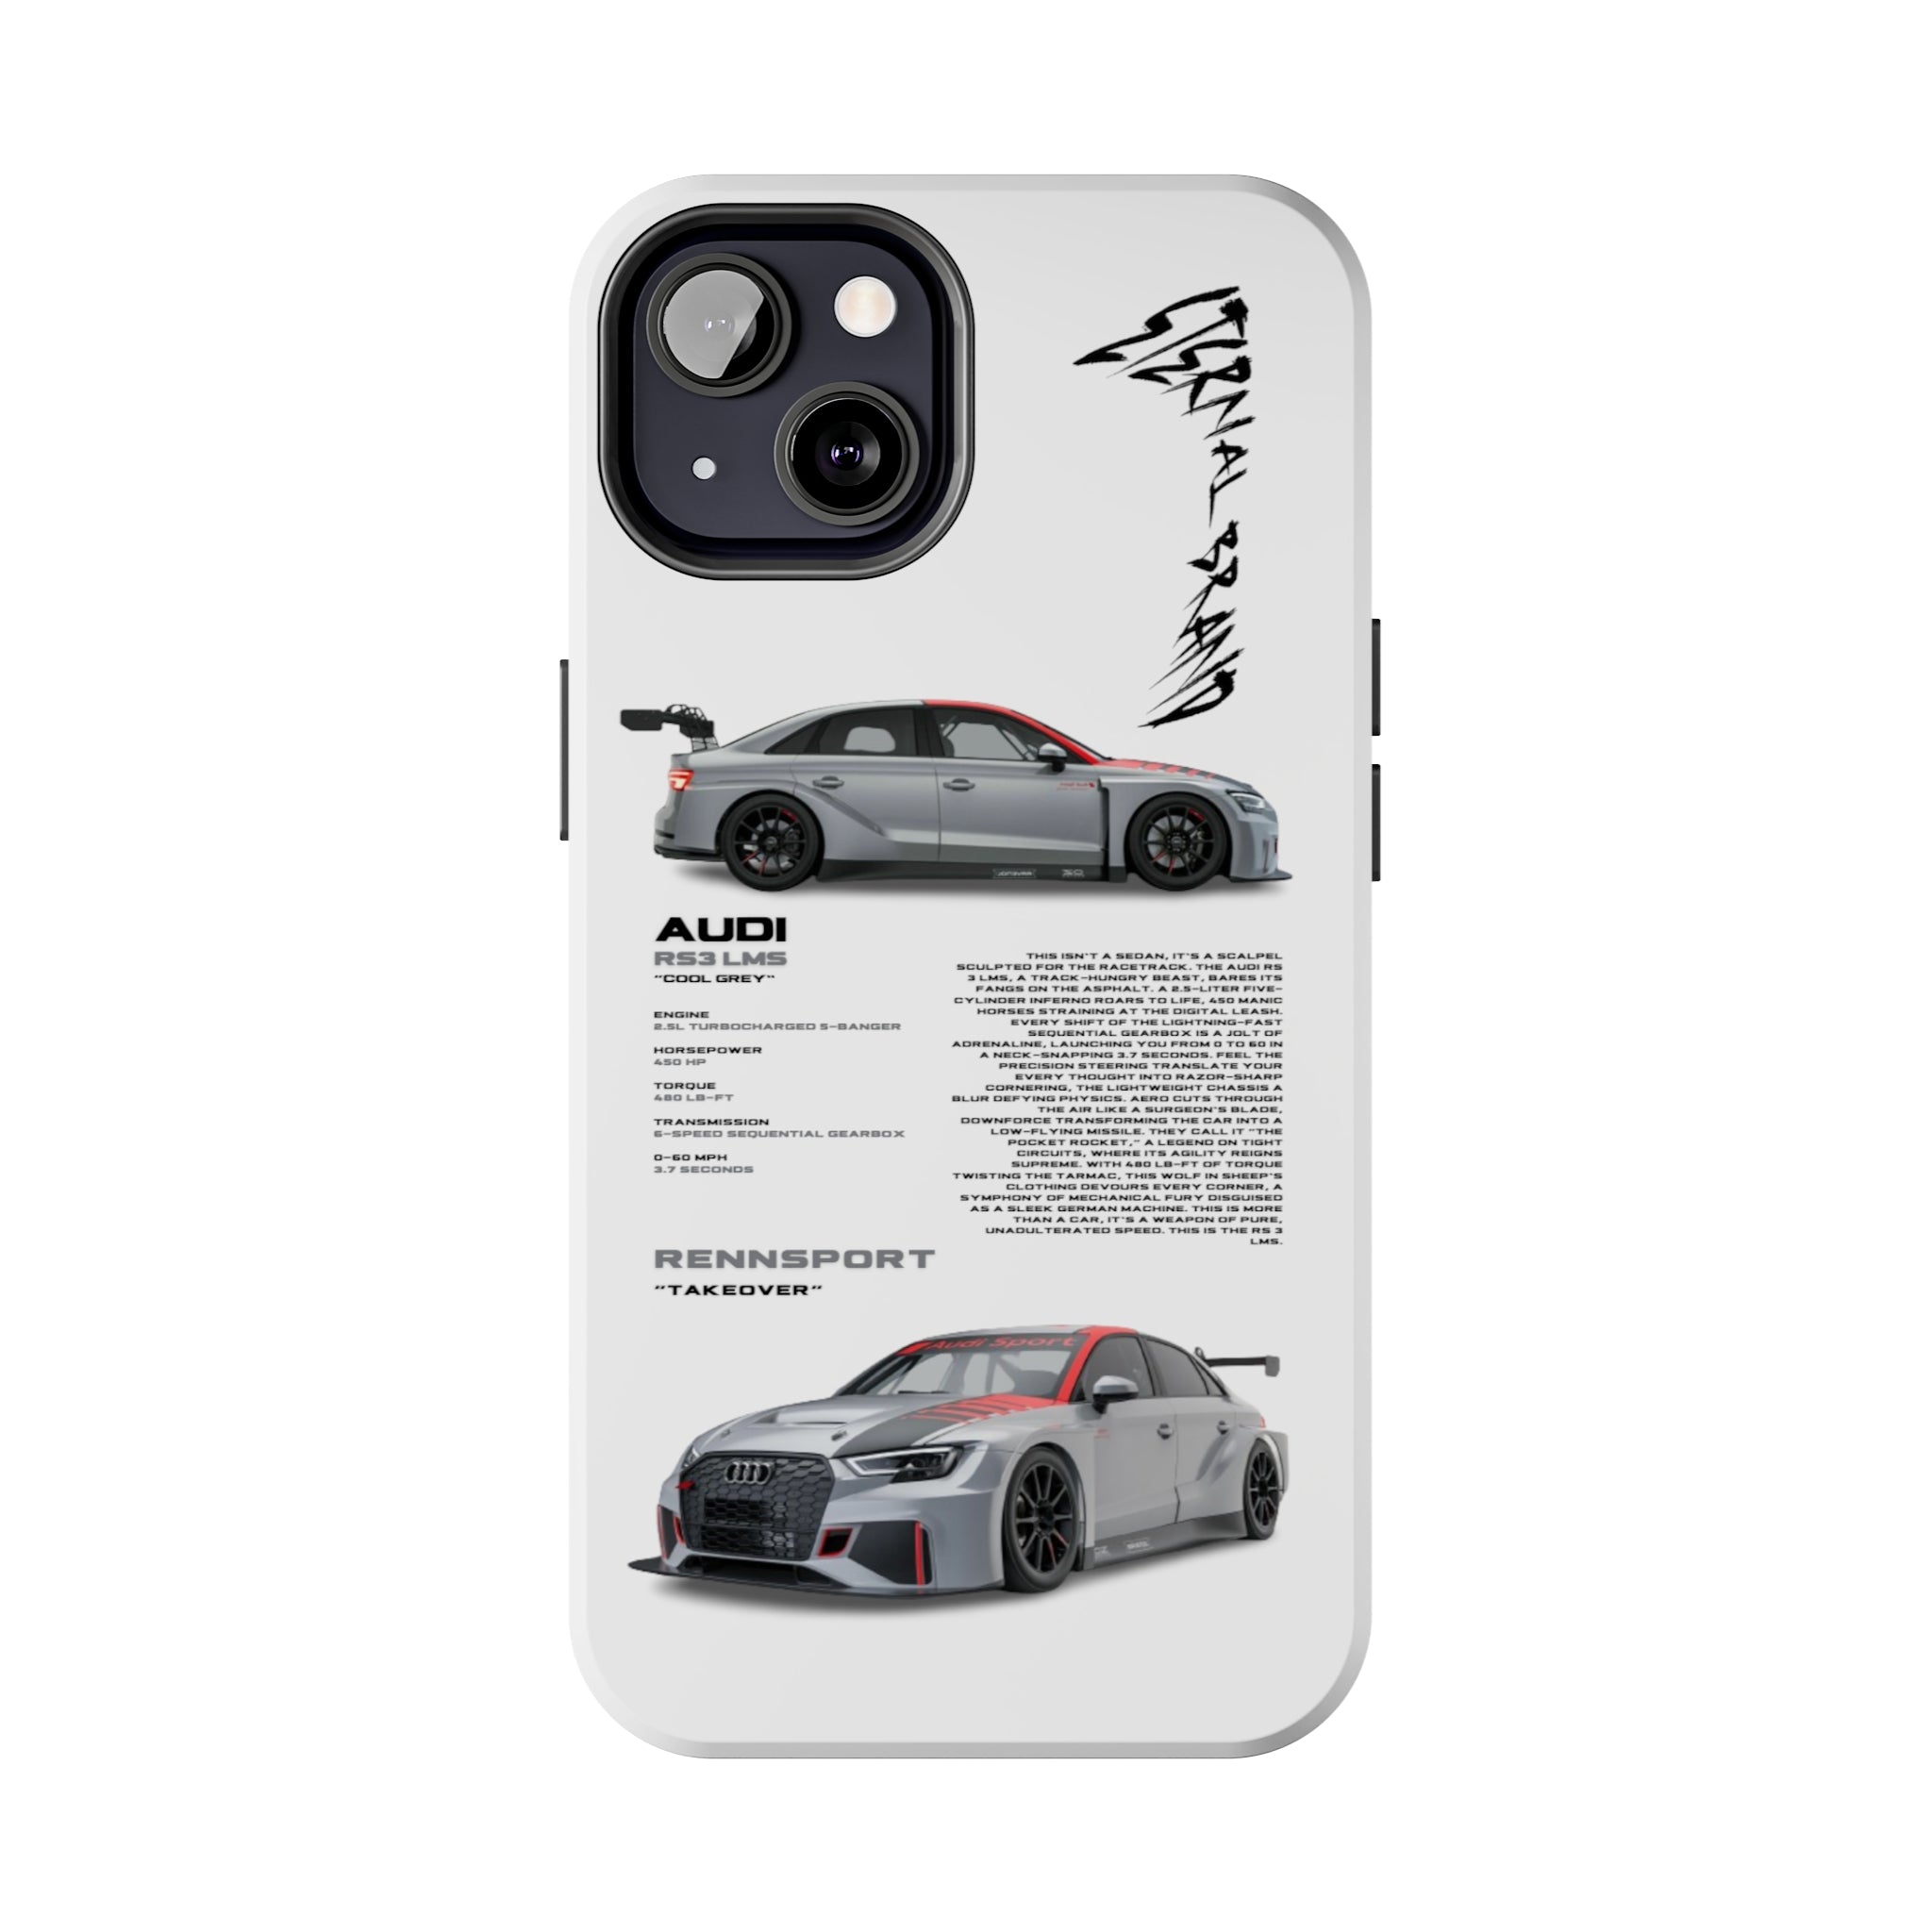 Audi RS3 LMS "Cool Grey"